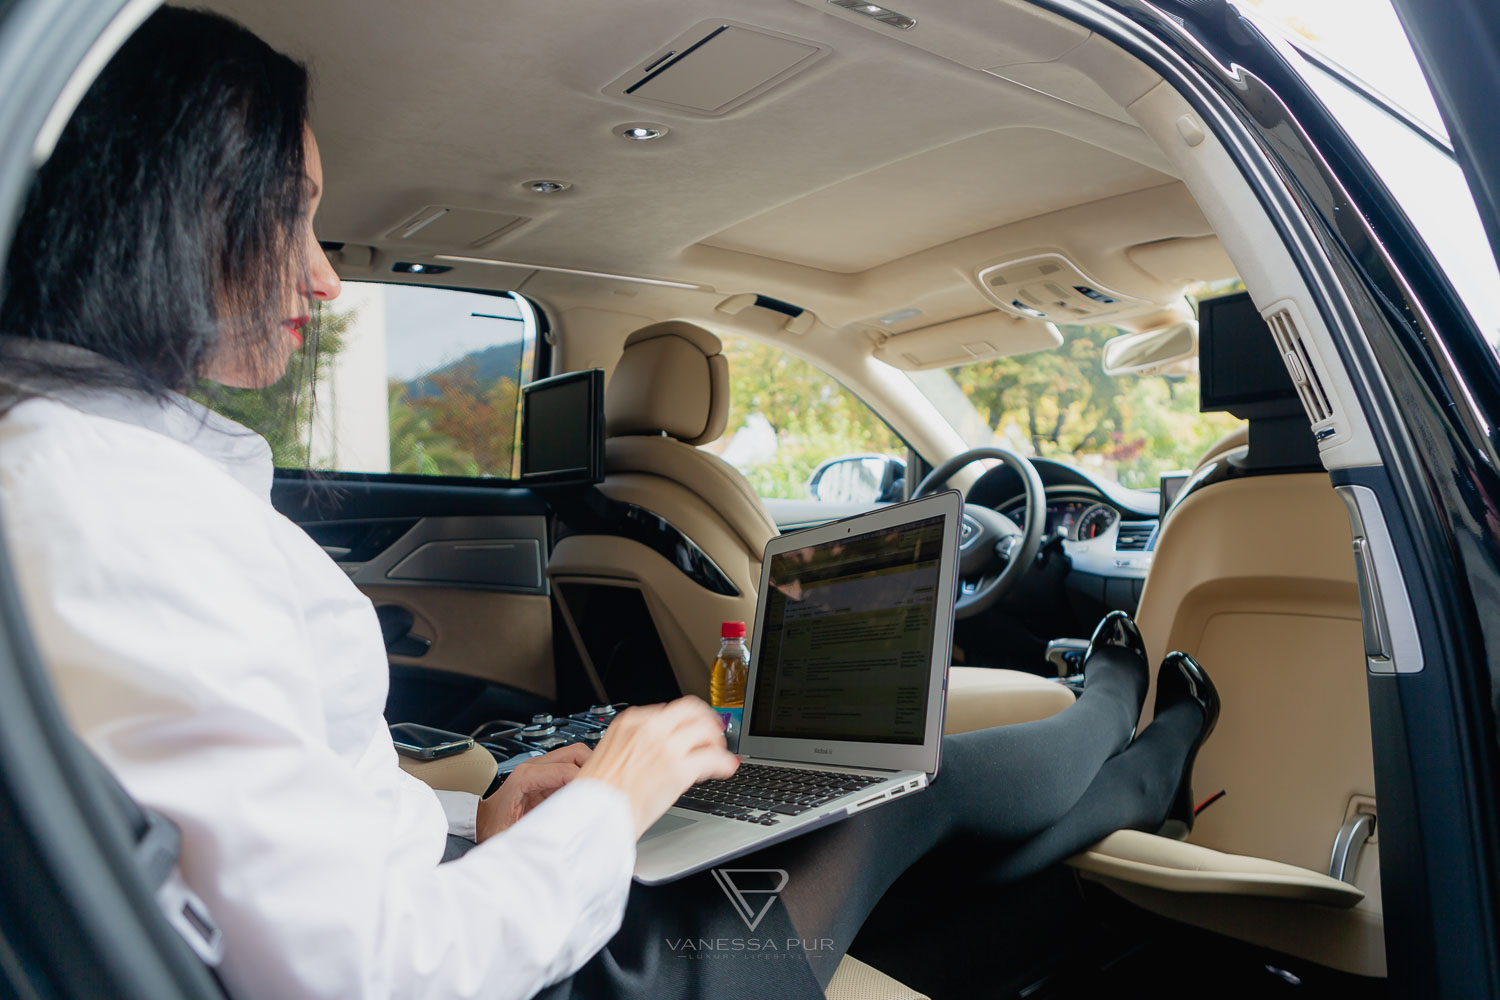 AUDI A8L 6.3 W12 - Fahrbericht mit Business Class Feeling und Luxus-Limousine Luxusauto mit Liegesitz im Test und Erfahrung zum Event als VIP